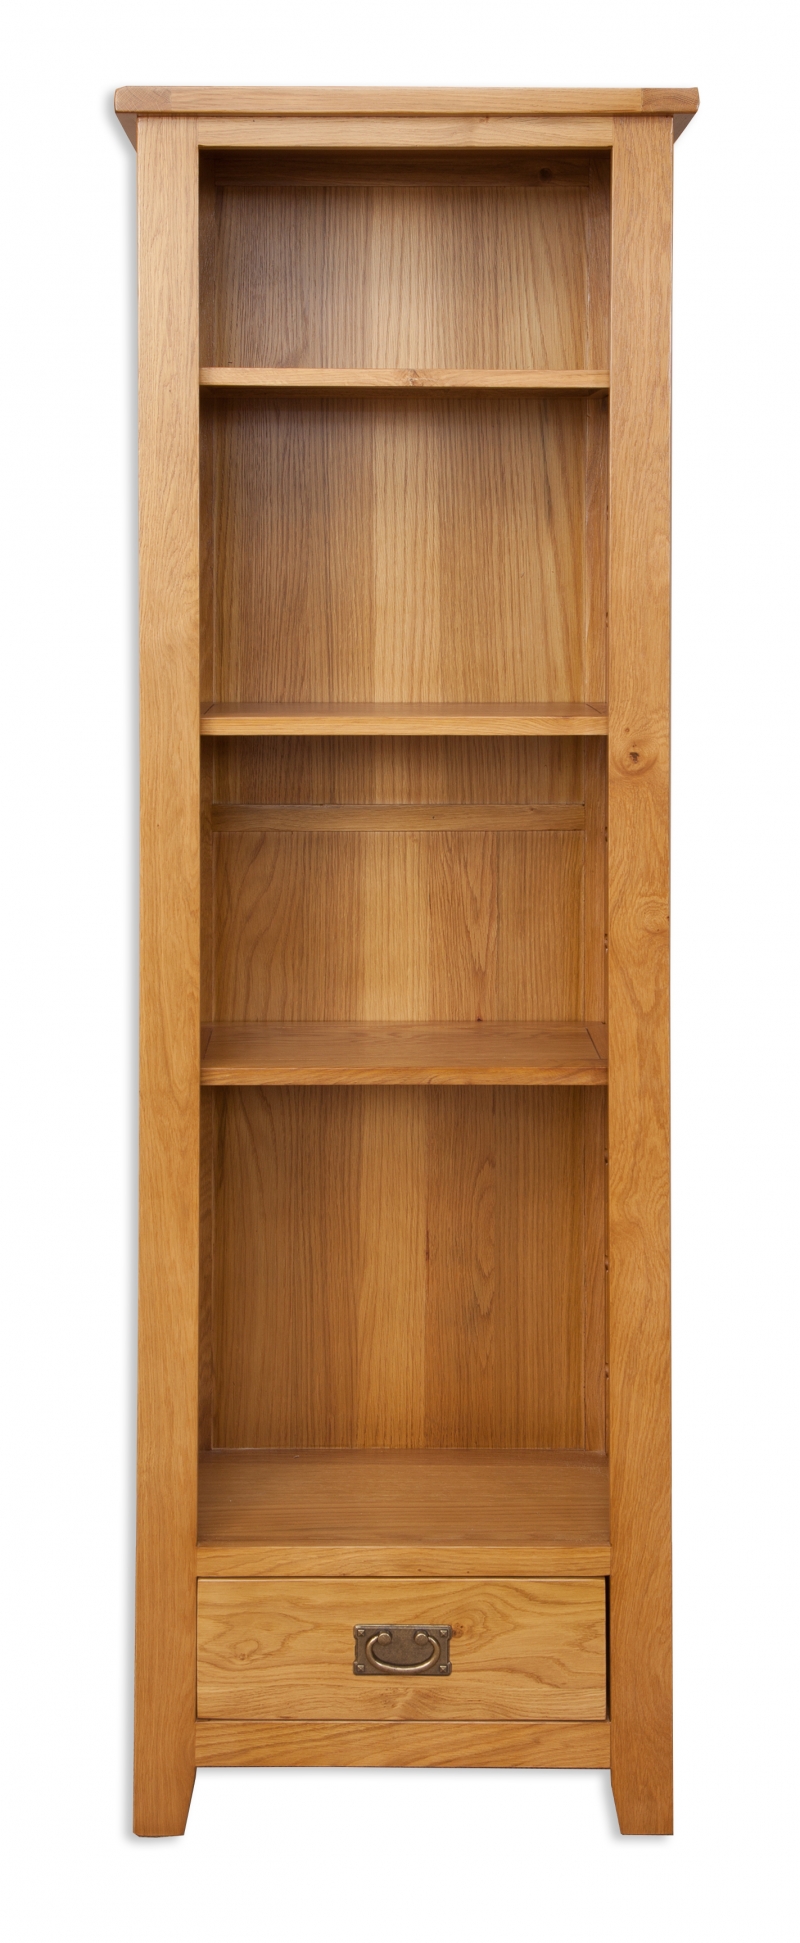 natural oak slim bookcase £469